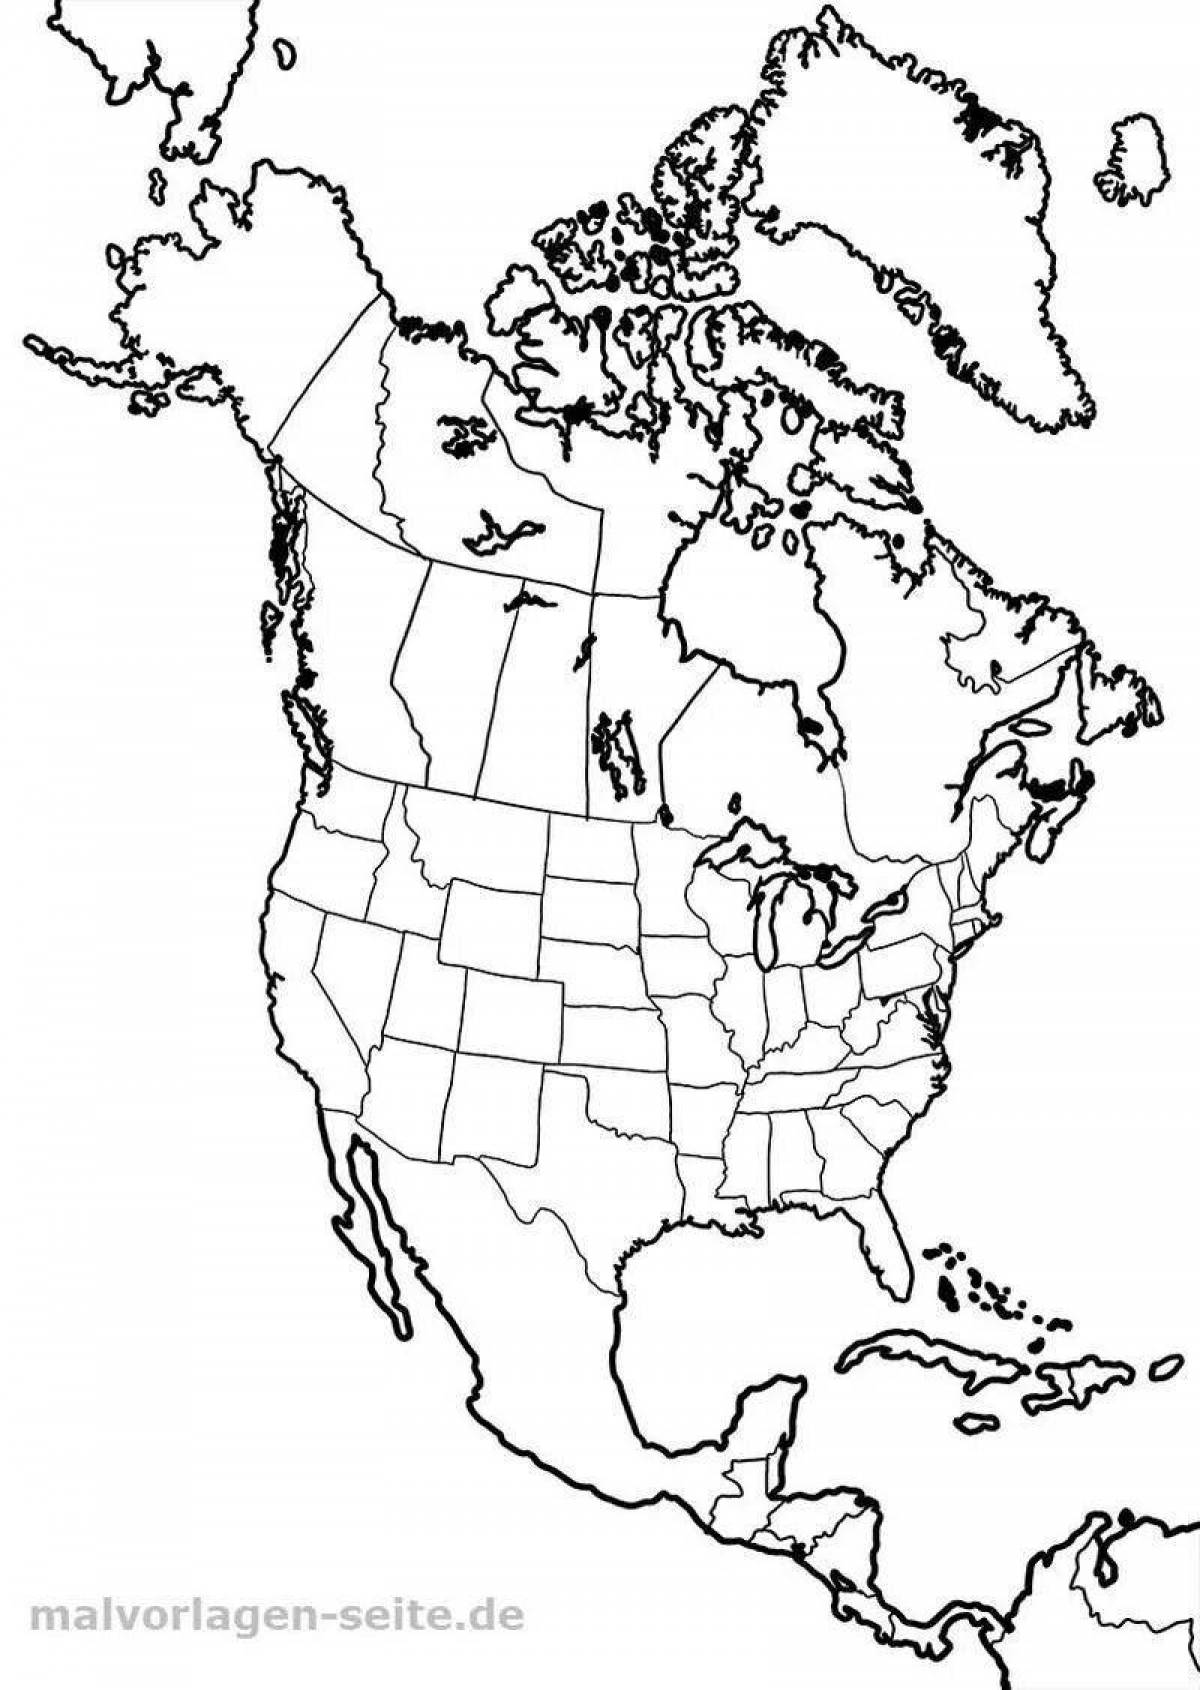 Страны и столицы северной америки контурная карта. Политическая контурная карта Северной Америки. Контурная политическая карта Северной Америки для печати. Пустая карта Северной Америки. Карта Северной Америки контур.